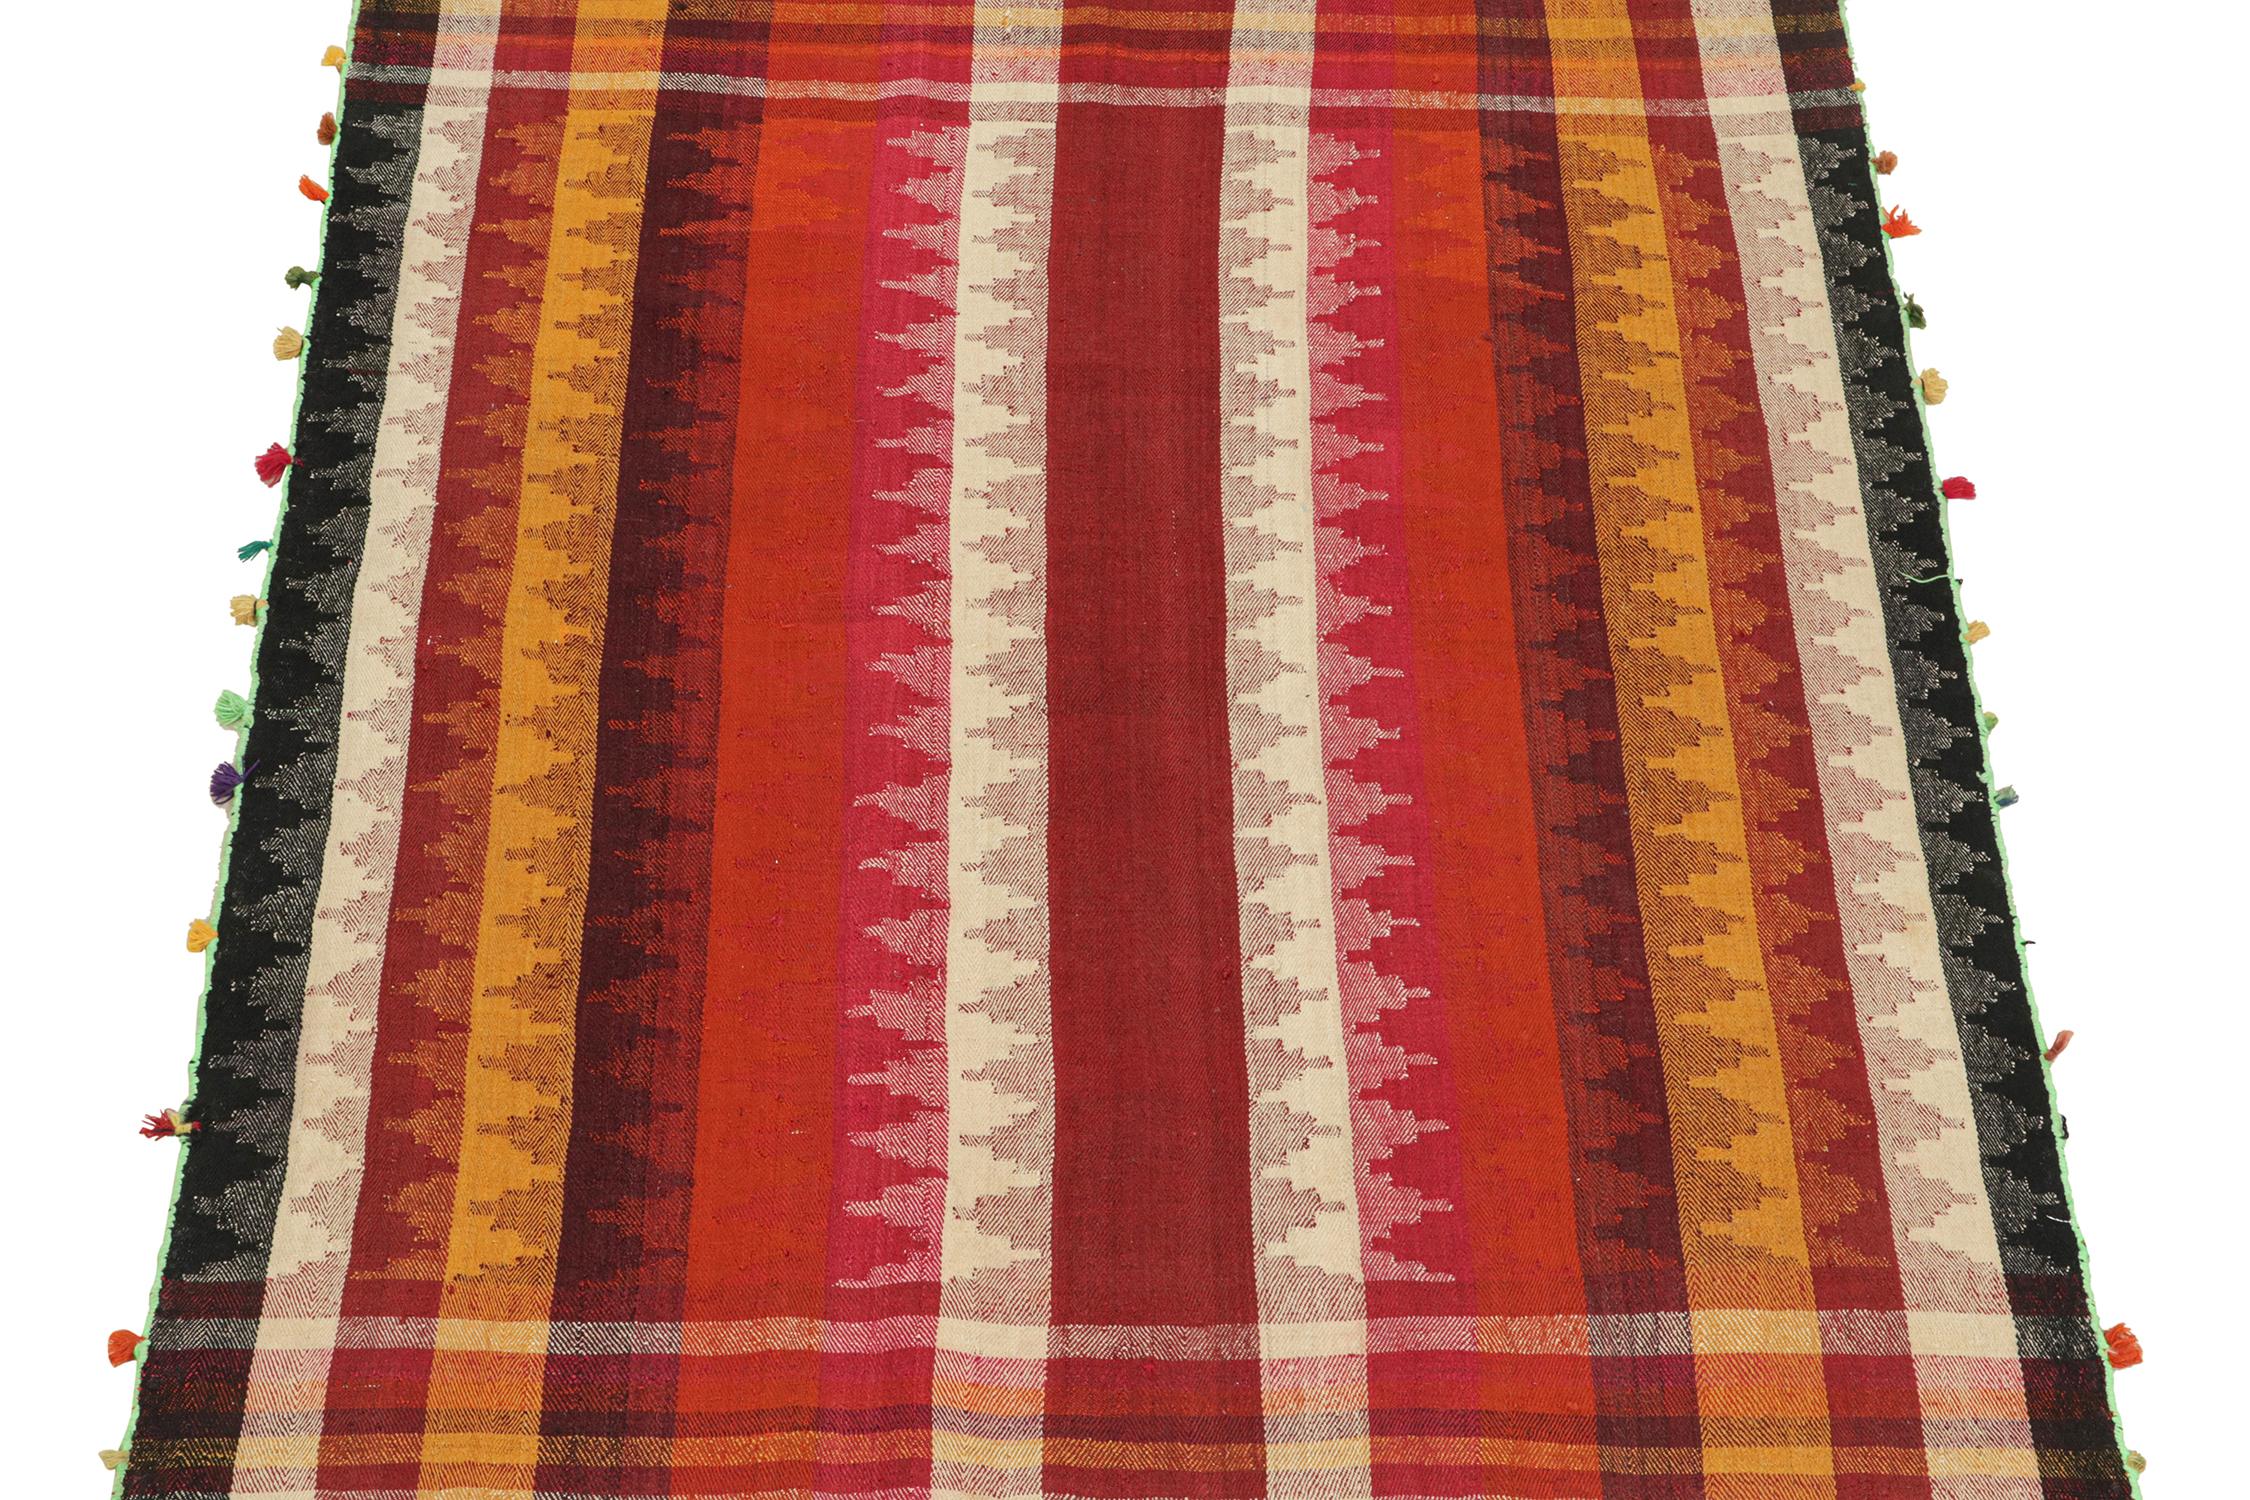 Ce Rug & Kilim persan vintage de 5x7 est un tapis tribal du milieu du siècle, tissé à la main en laine vers 1950-1960.

Le design présente des rayures verticales et des bordures à carreaux dans des tons vifs et chauds de rouge, de noir, de blanc,